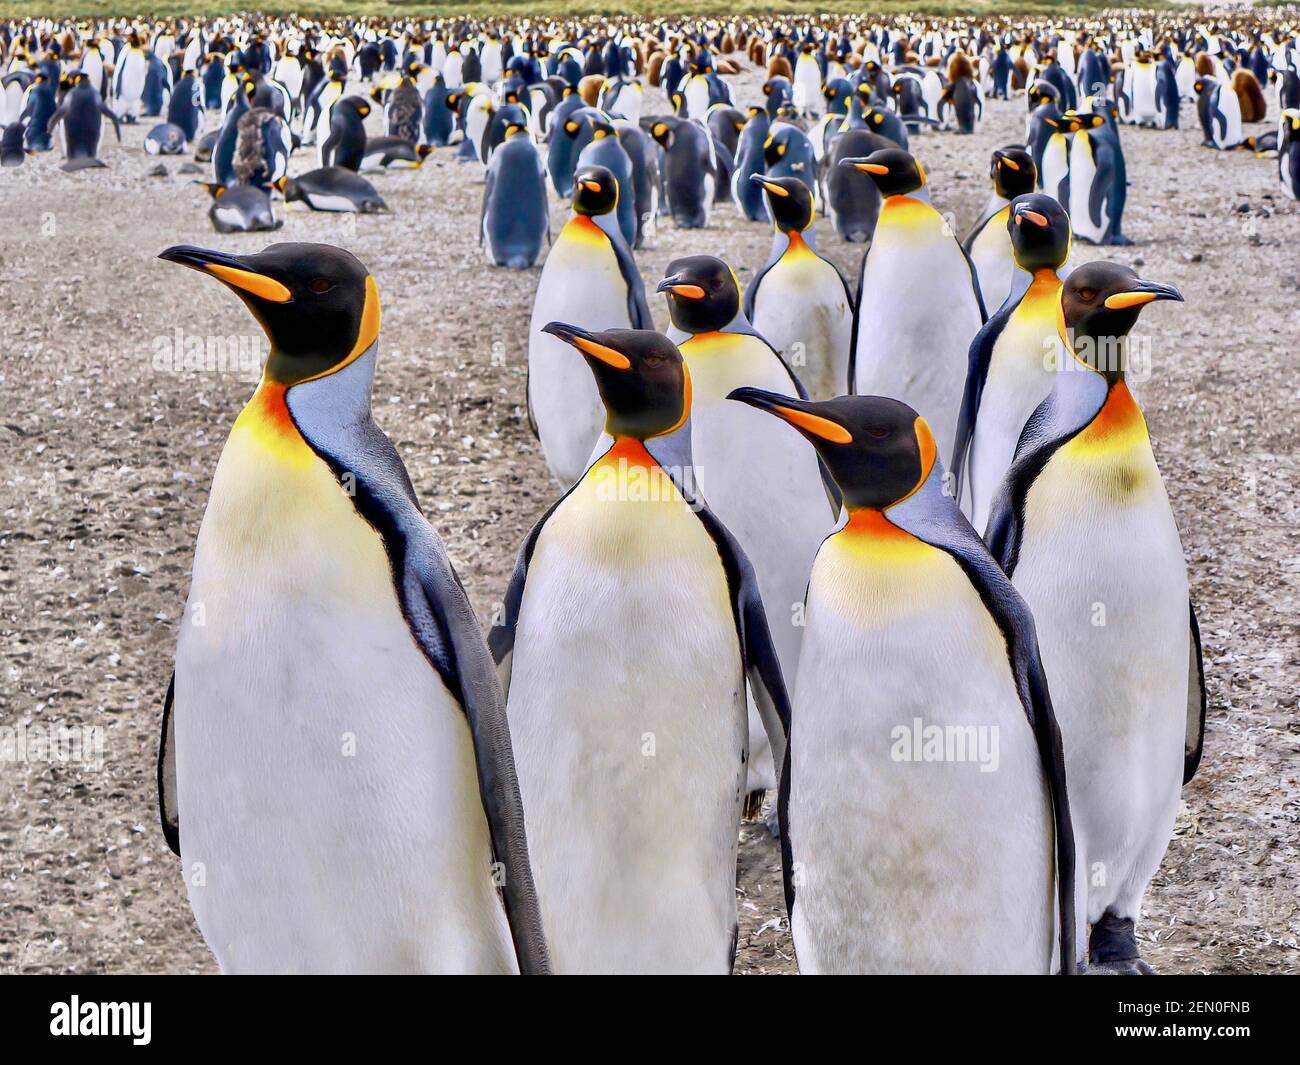 Vue rapprochée de plusieurs pingouins roi identiques se déplaçant vers la caméra, avec une grande colonie de pingouins en arrière-plan. Île de Géorgie du Sud. Banque D'Images